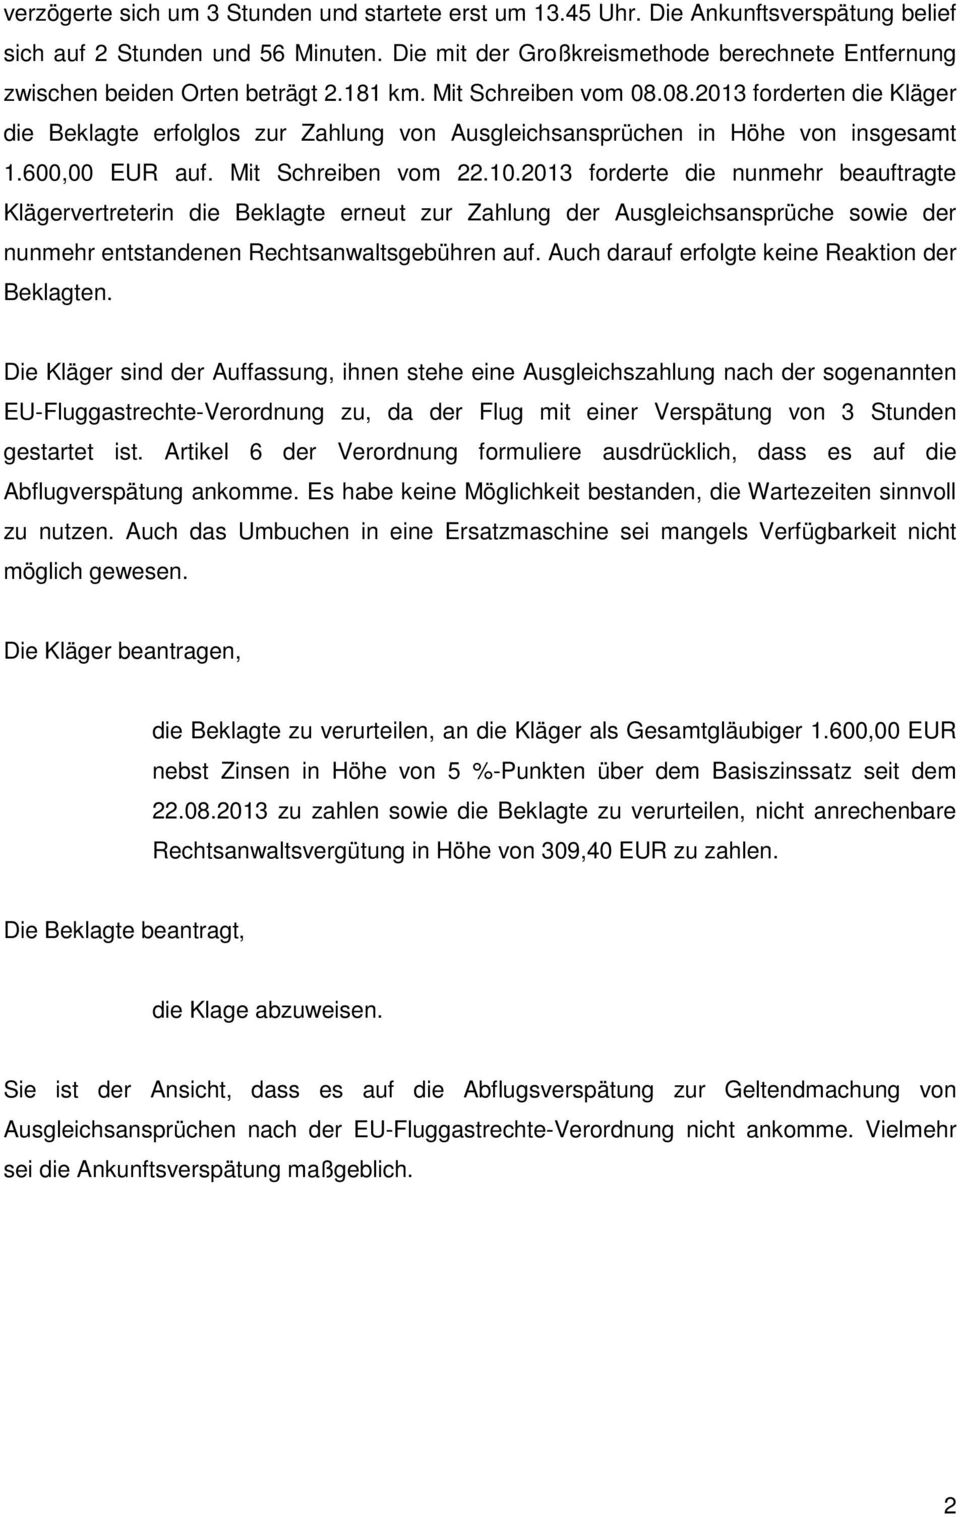 08.2013 forderten die Kläger die Beklagte erfolglos zur Zahlung von Ausgleichsansprüchen in Höhe von insgesamt 1.600,00 EUR auf. Mit Schreiben vom 22.10.